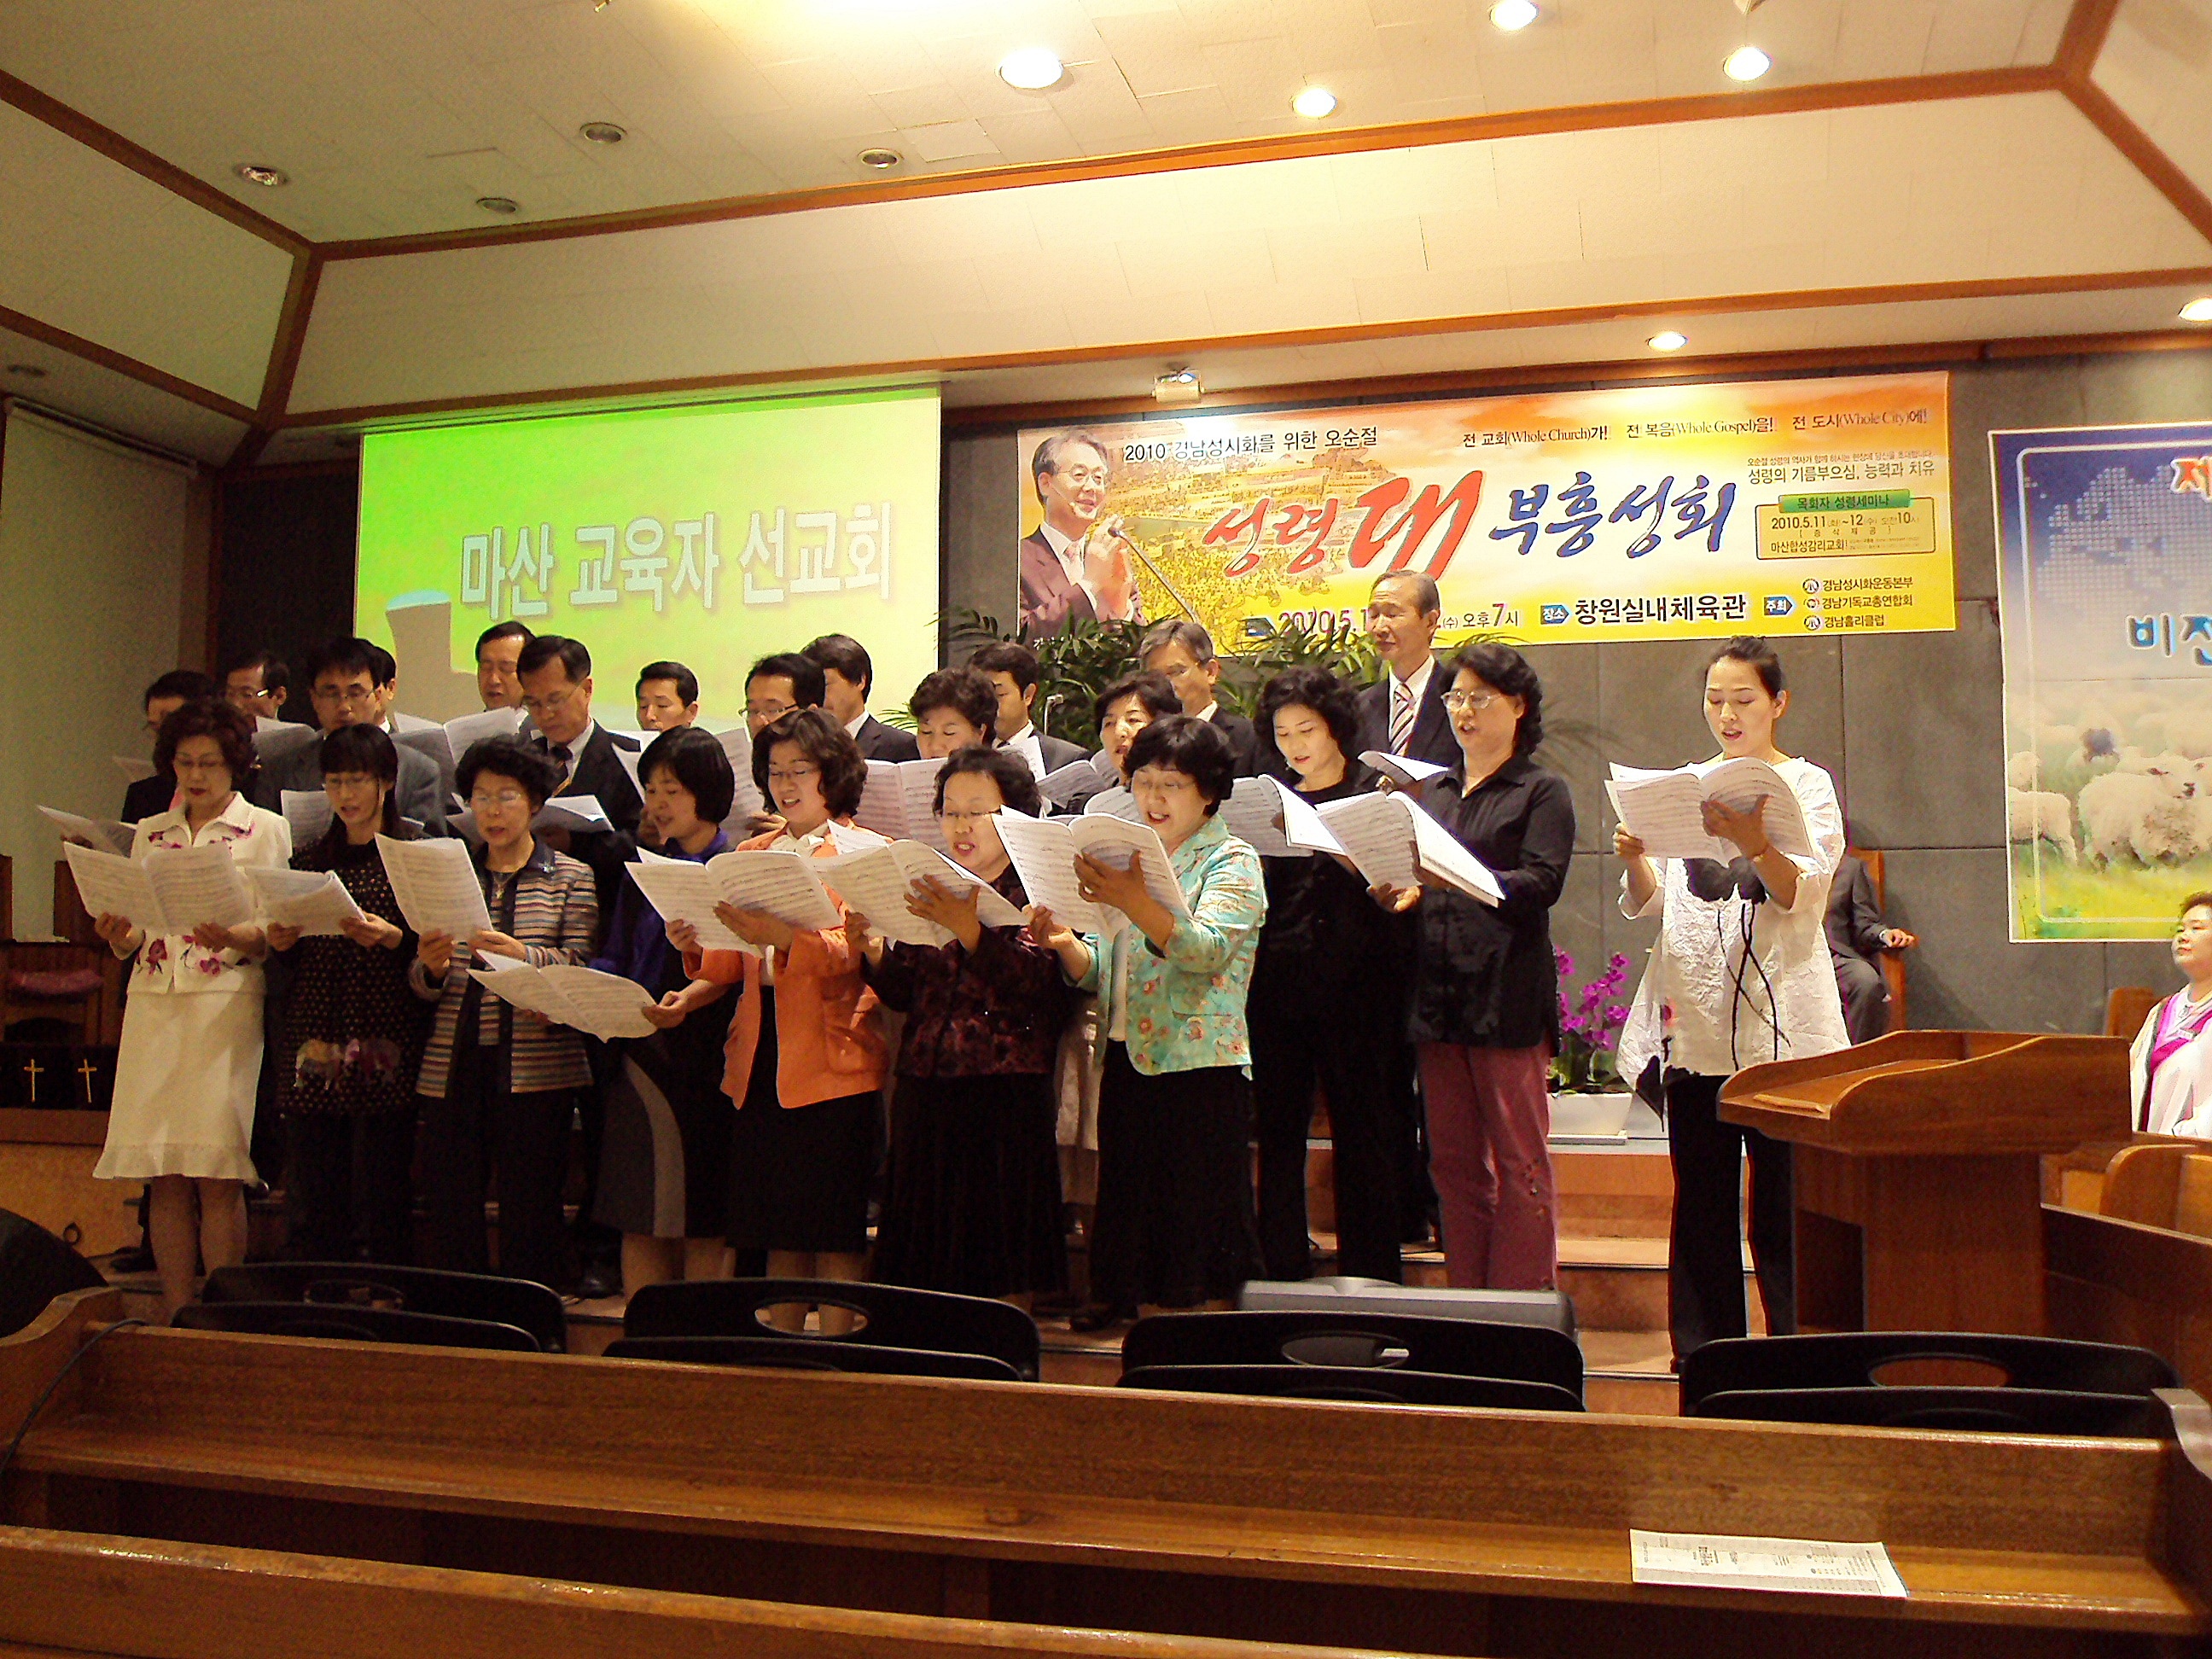 2010.5.9. 마산성산교회 순회예배 사진입니다.